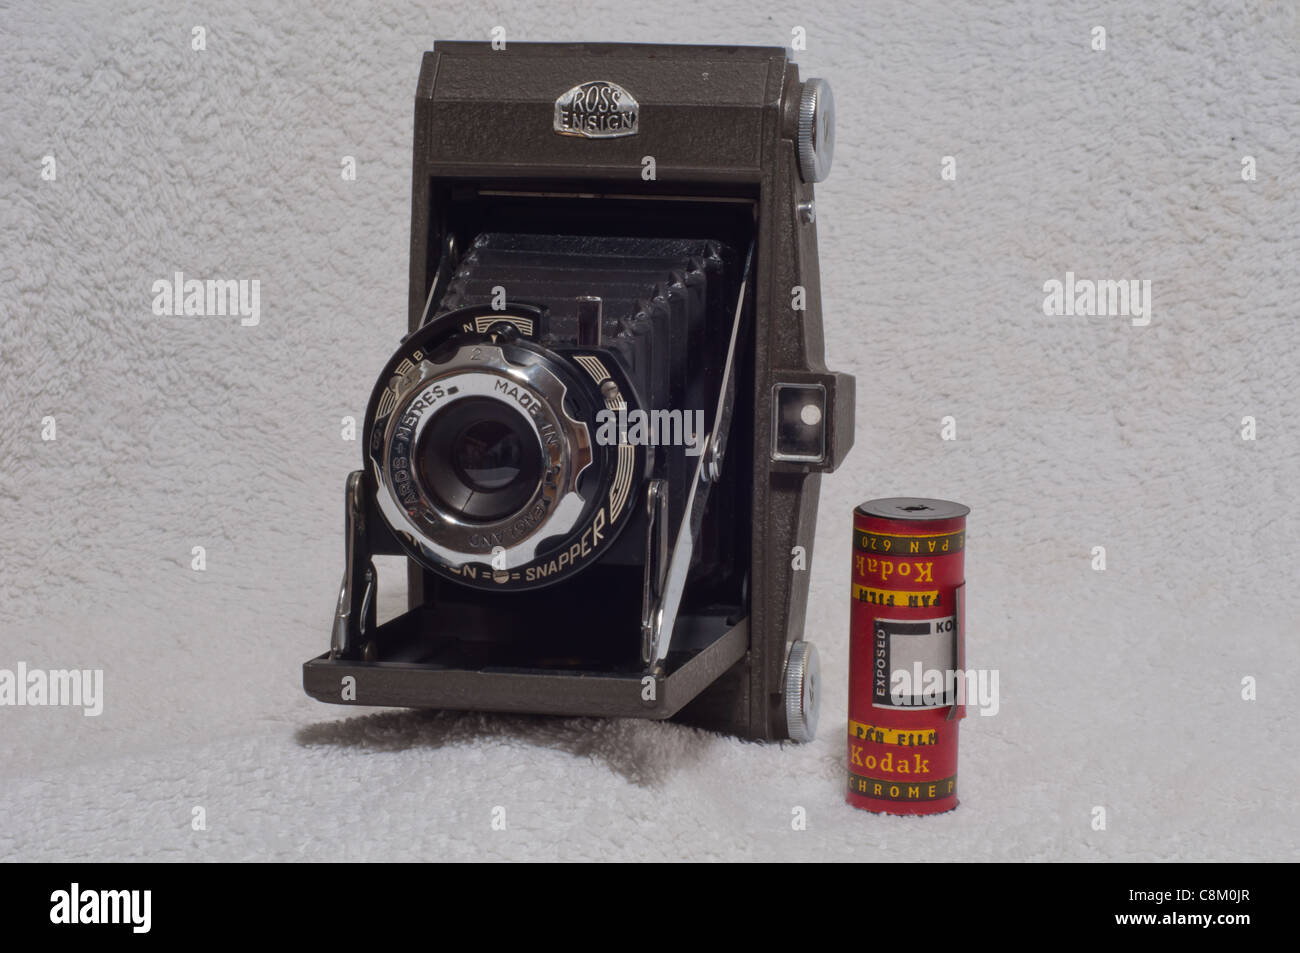 Ross Ensign Selfix Cámara plegable con película en rollo Kodak NP.620 2 1/4 x 3 1/4' Foto de stock